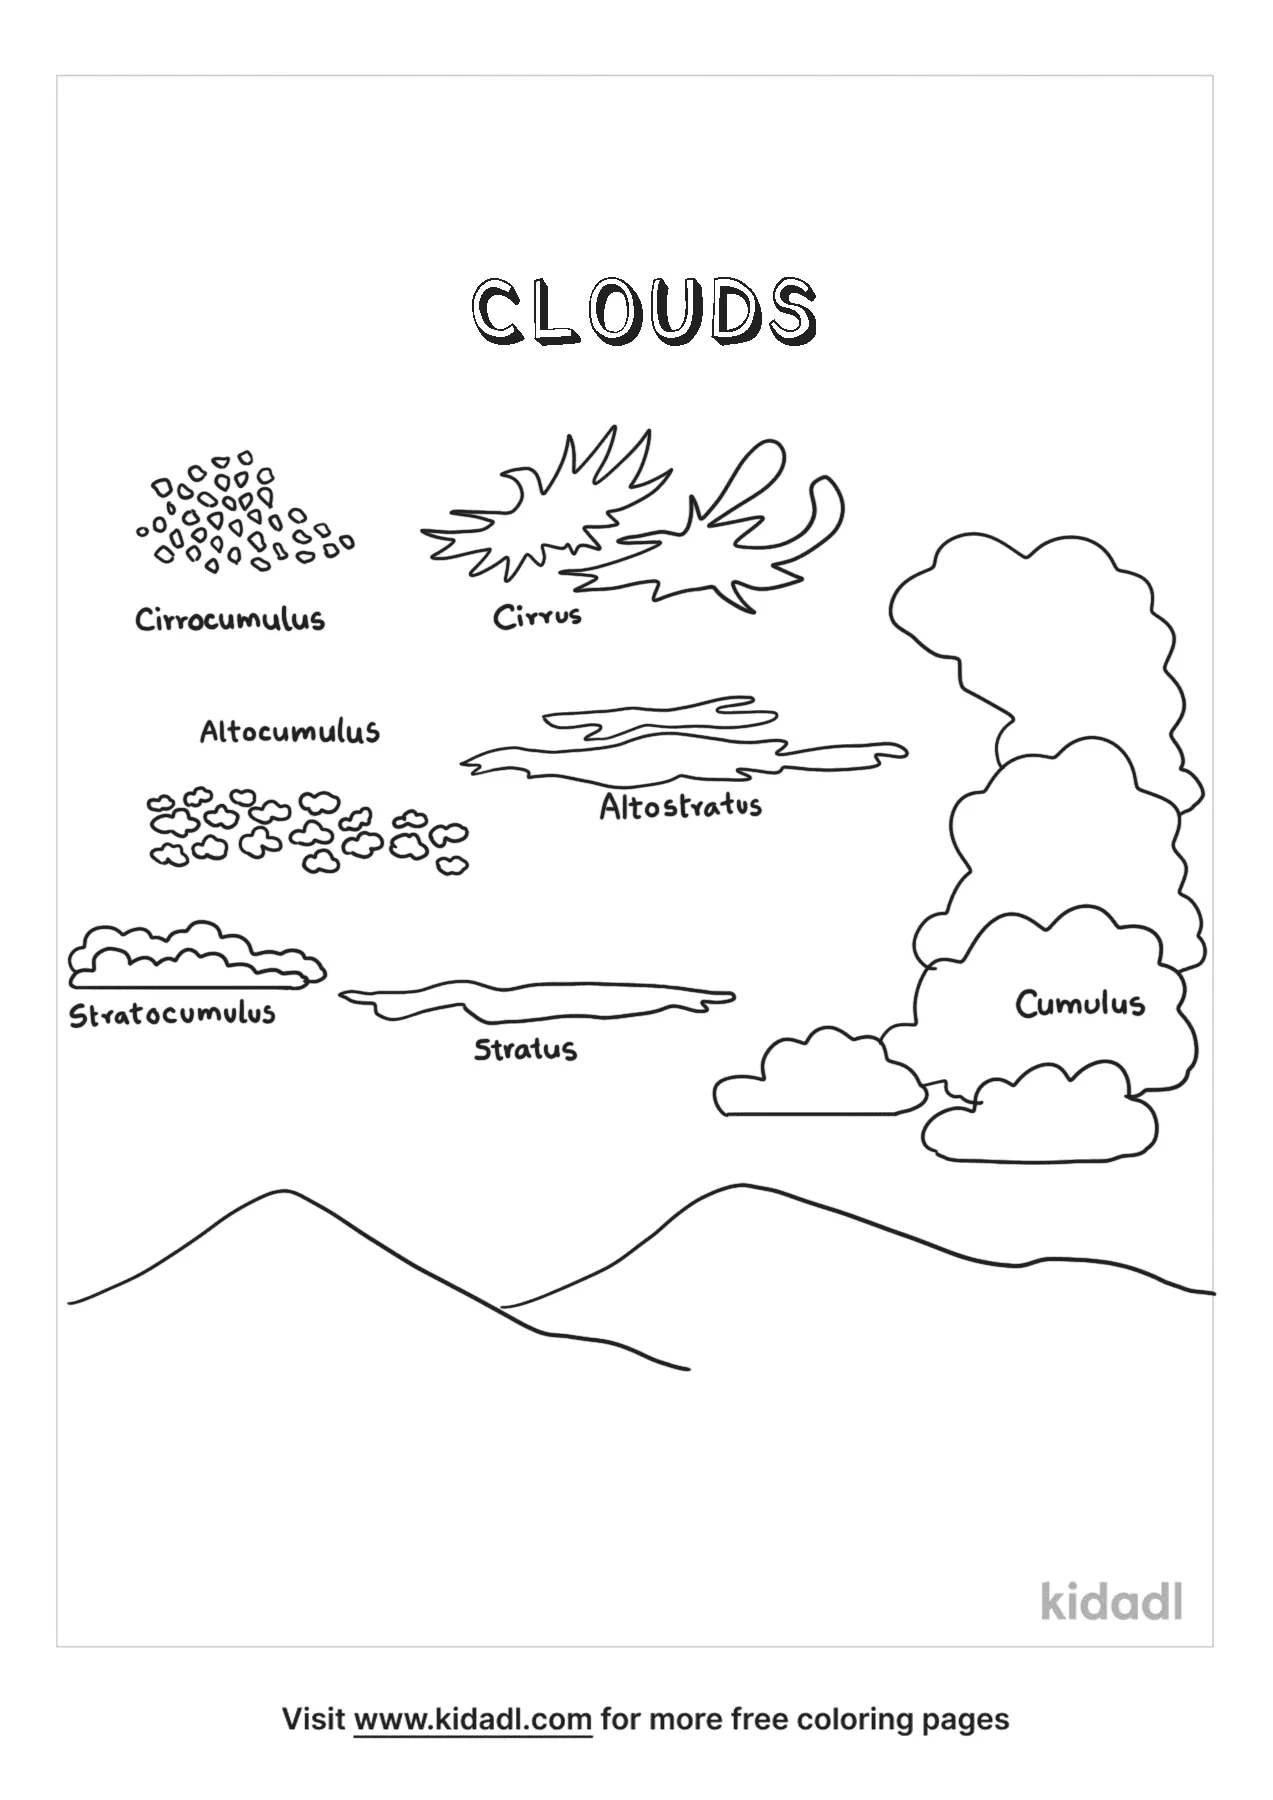 Cloud Types   Kidadl